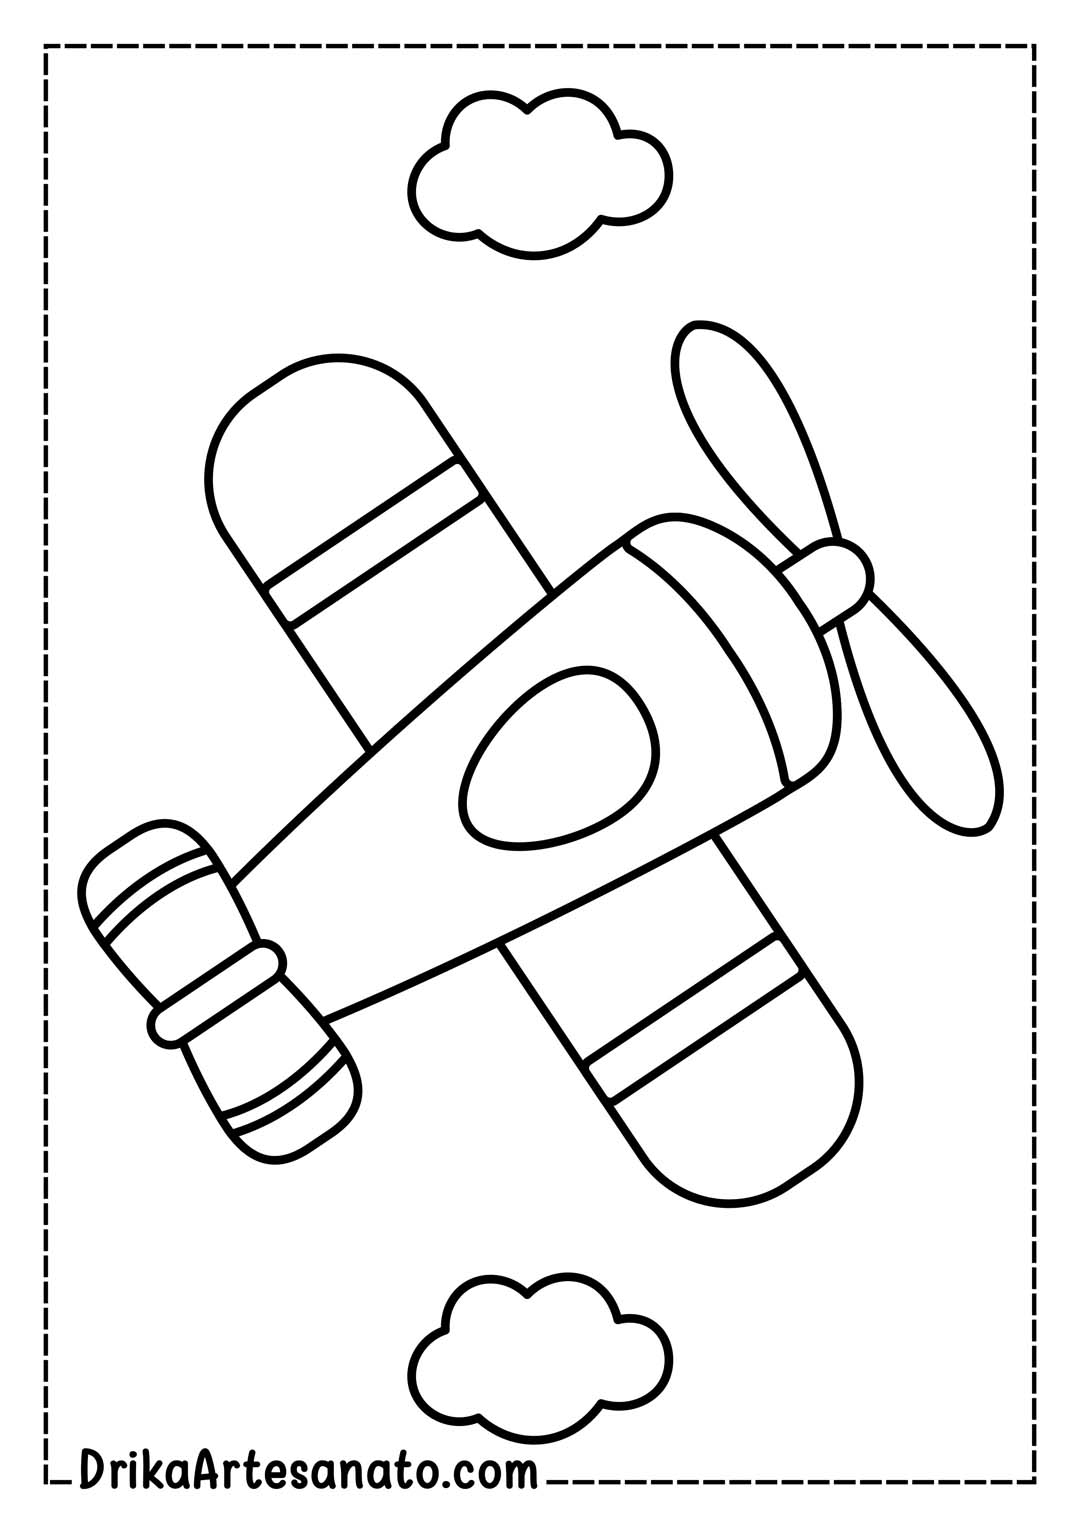 Desenho de Avião Infantil para Colorir, Imprimir, Pintar ou Recortar